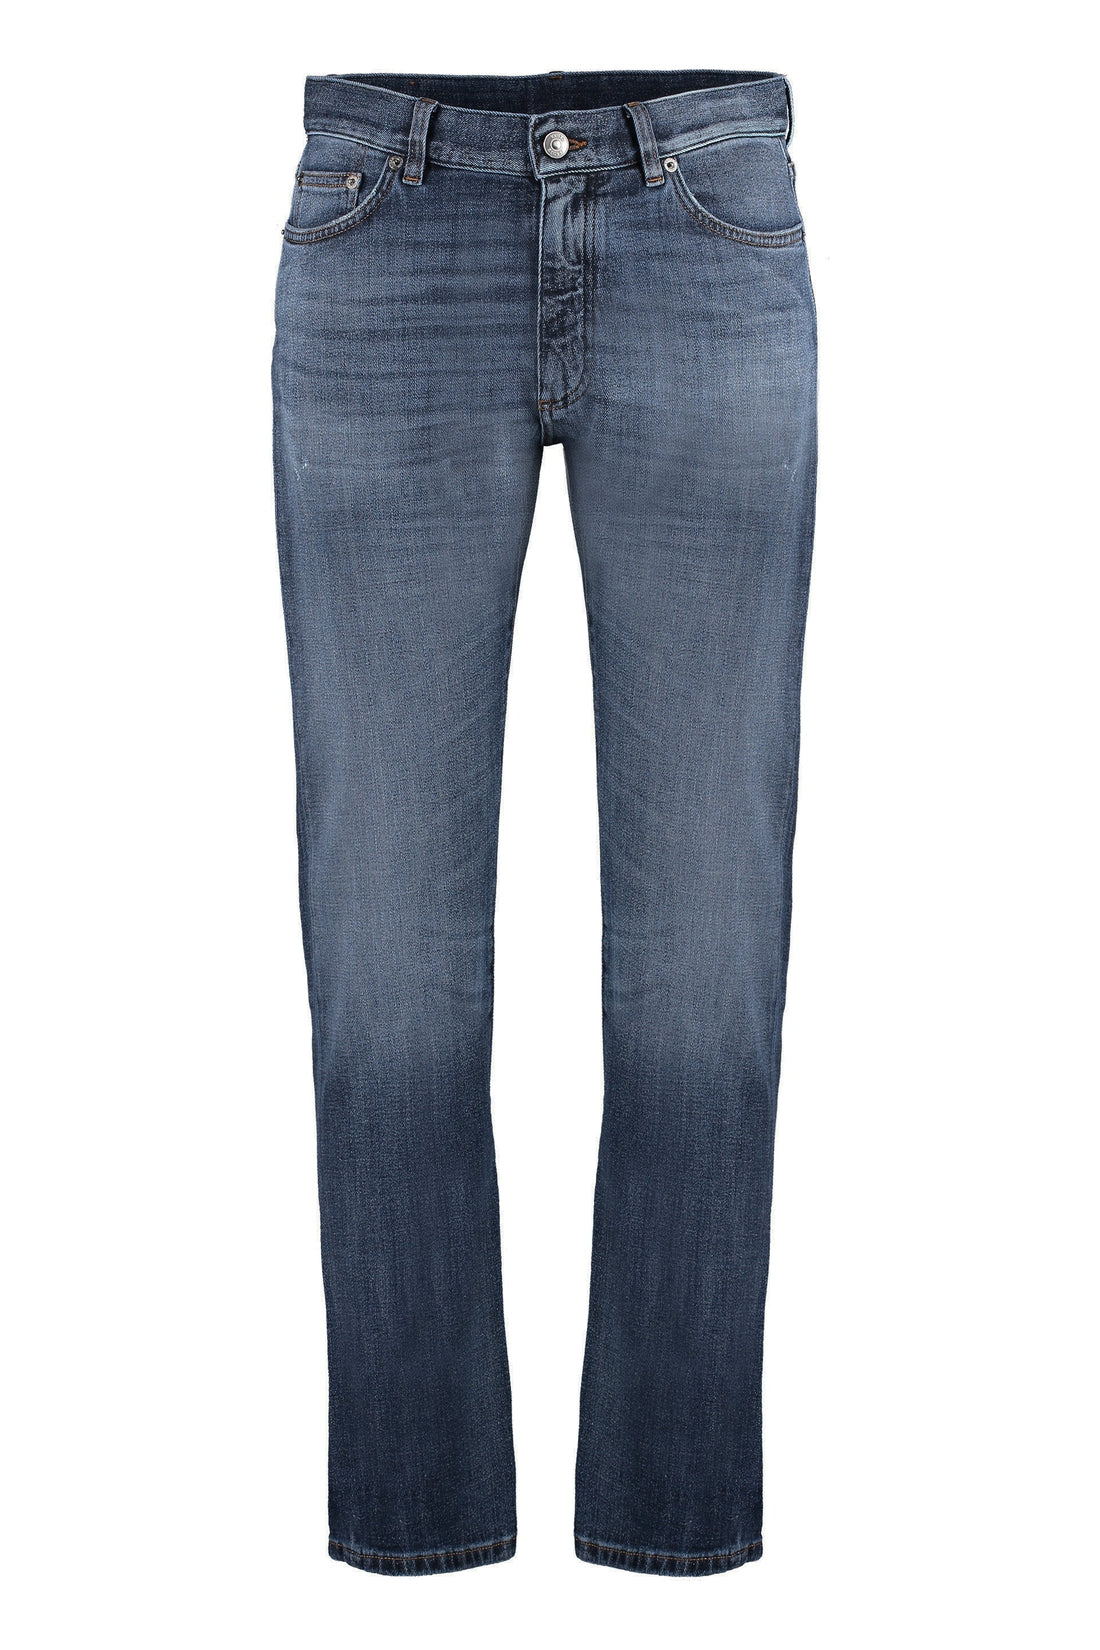 Zegna-OUTLET-SALE-City straight leg jeans-ARCHIVIST